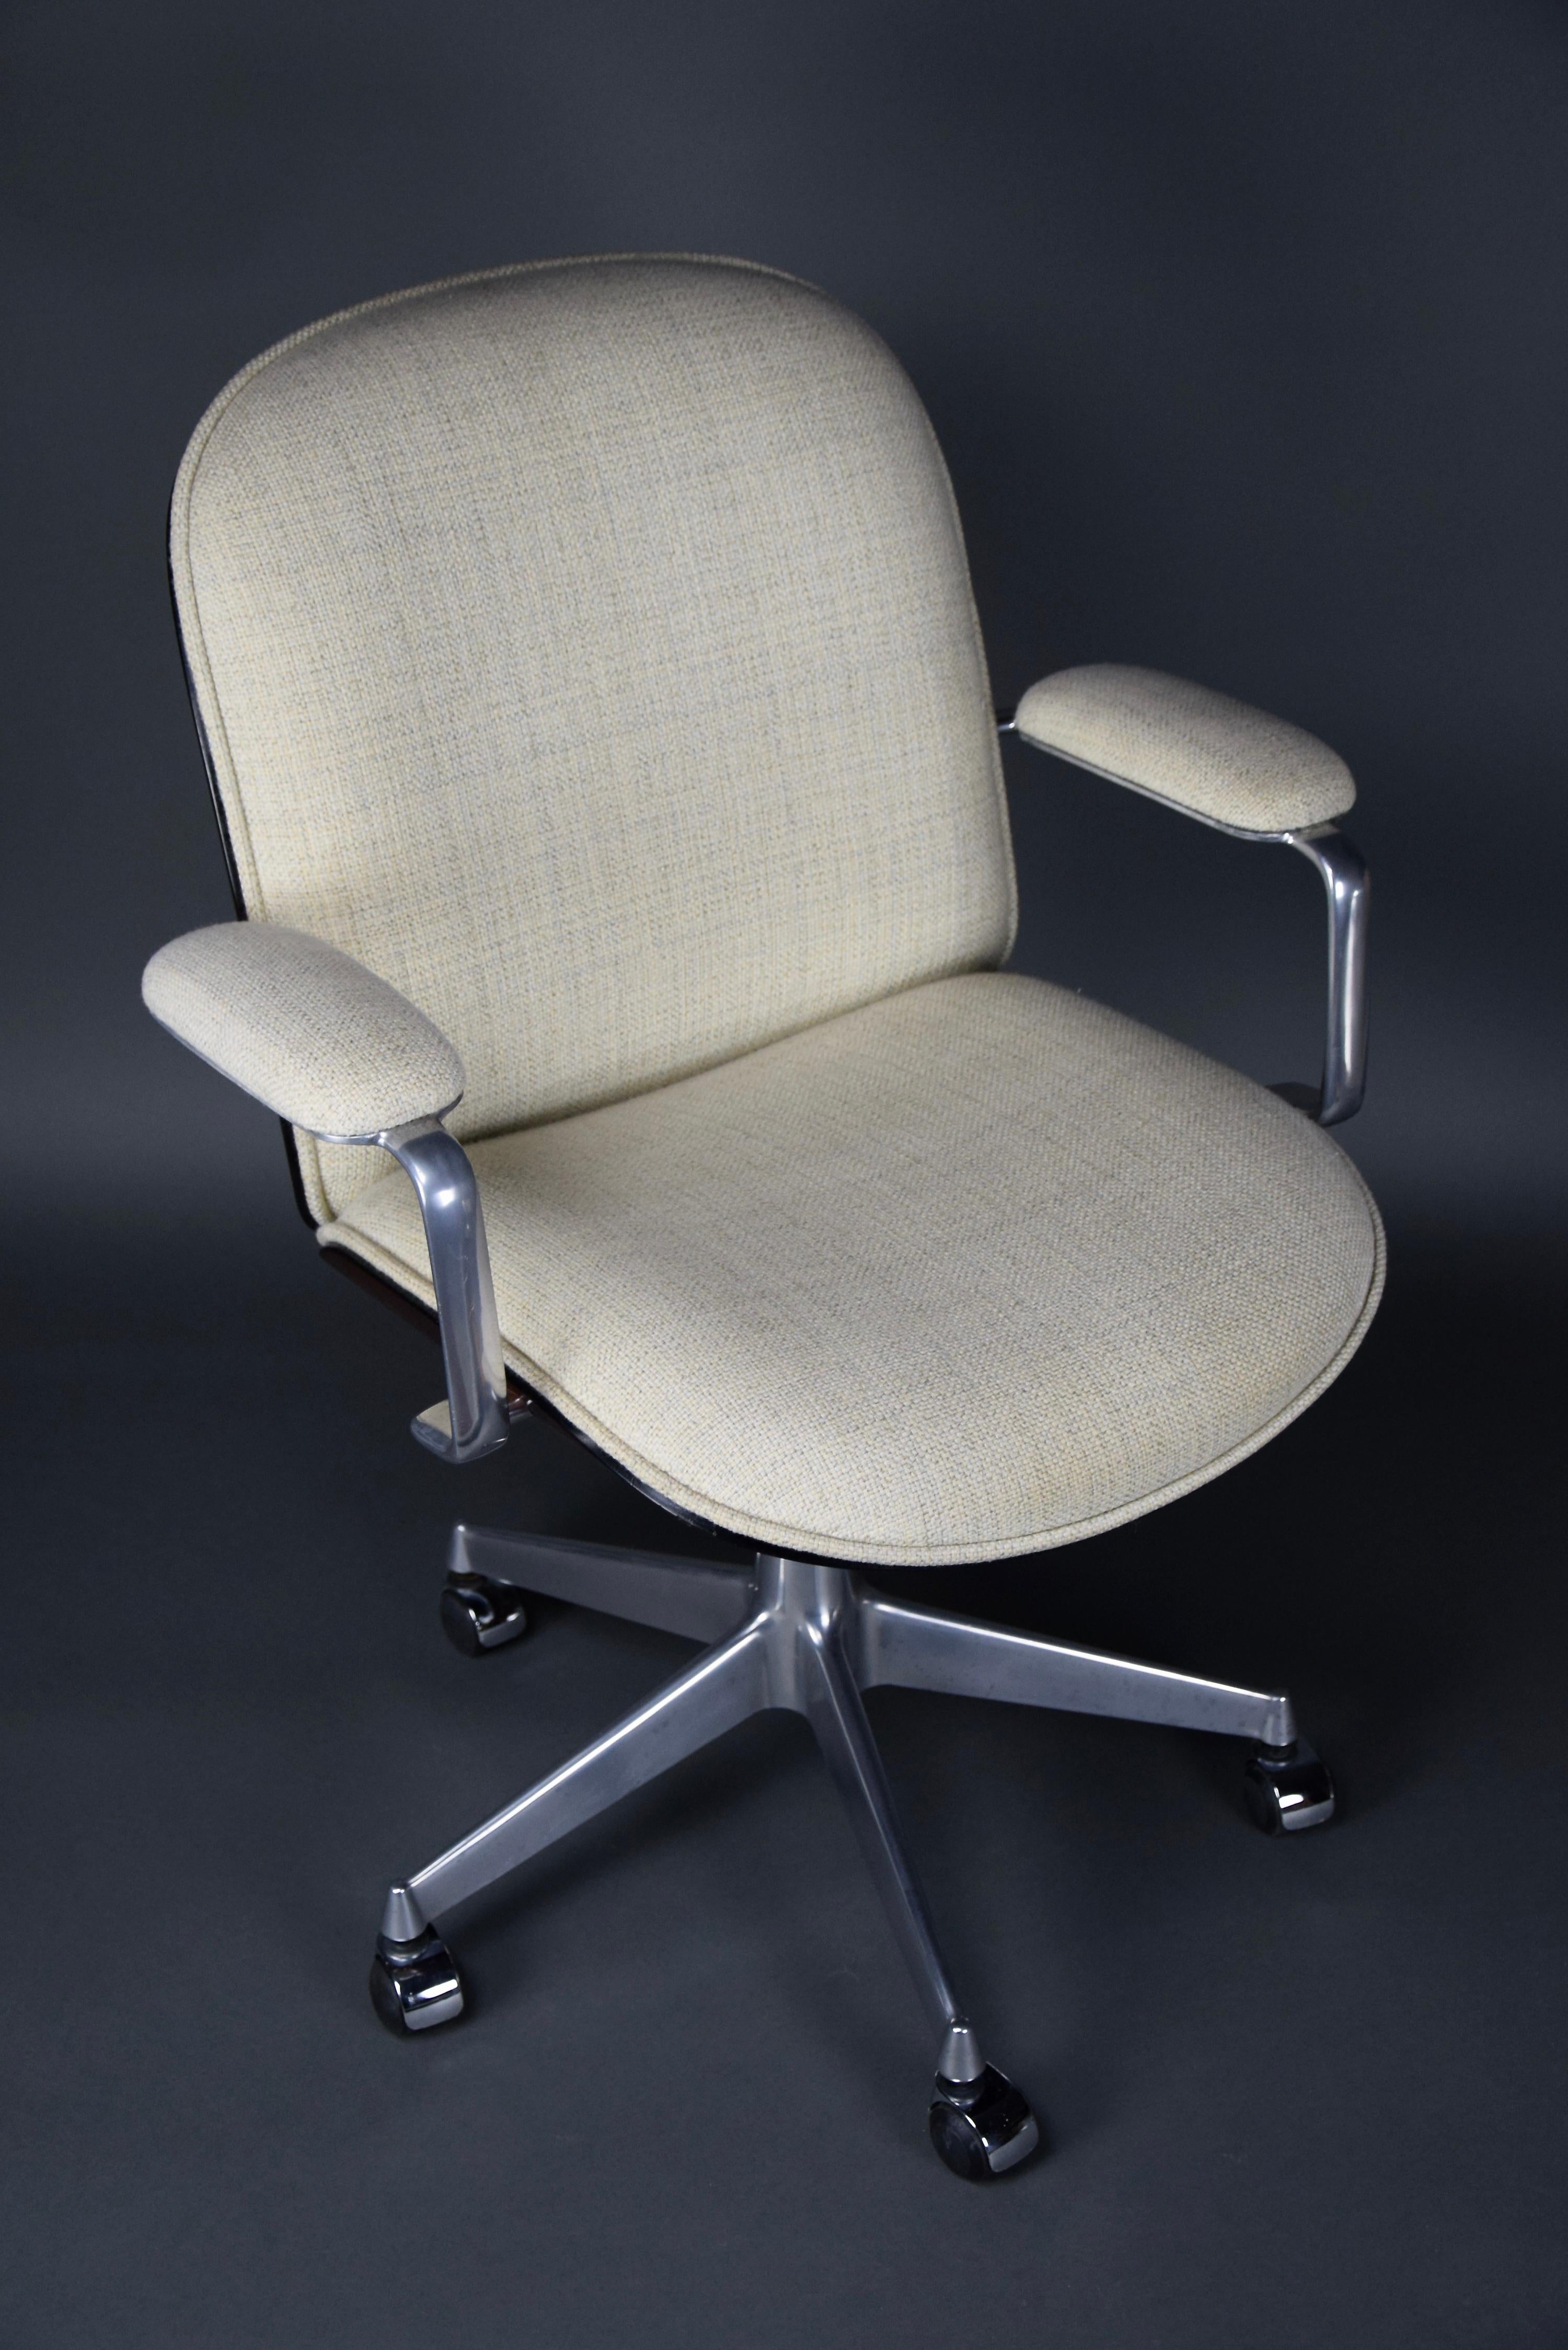 Rehaussez votre espace de bureau avec cette rare chaise de bureau moderne du milieu du siècle dernier, conçue par le célèbre Ico Parisi pour MIM Rome, en Italie.

Cette chaise n'est pas seulement élégante, elle est aussi une œuvre d'art qui sera le